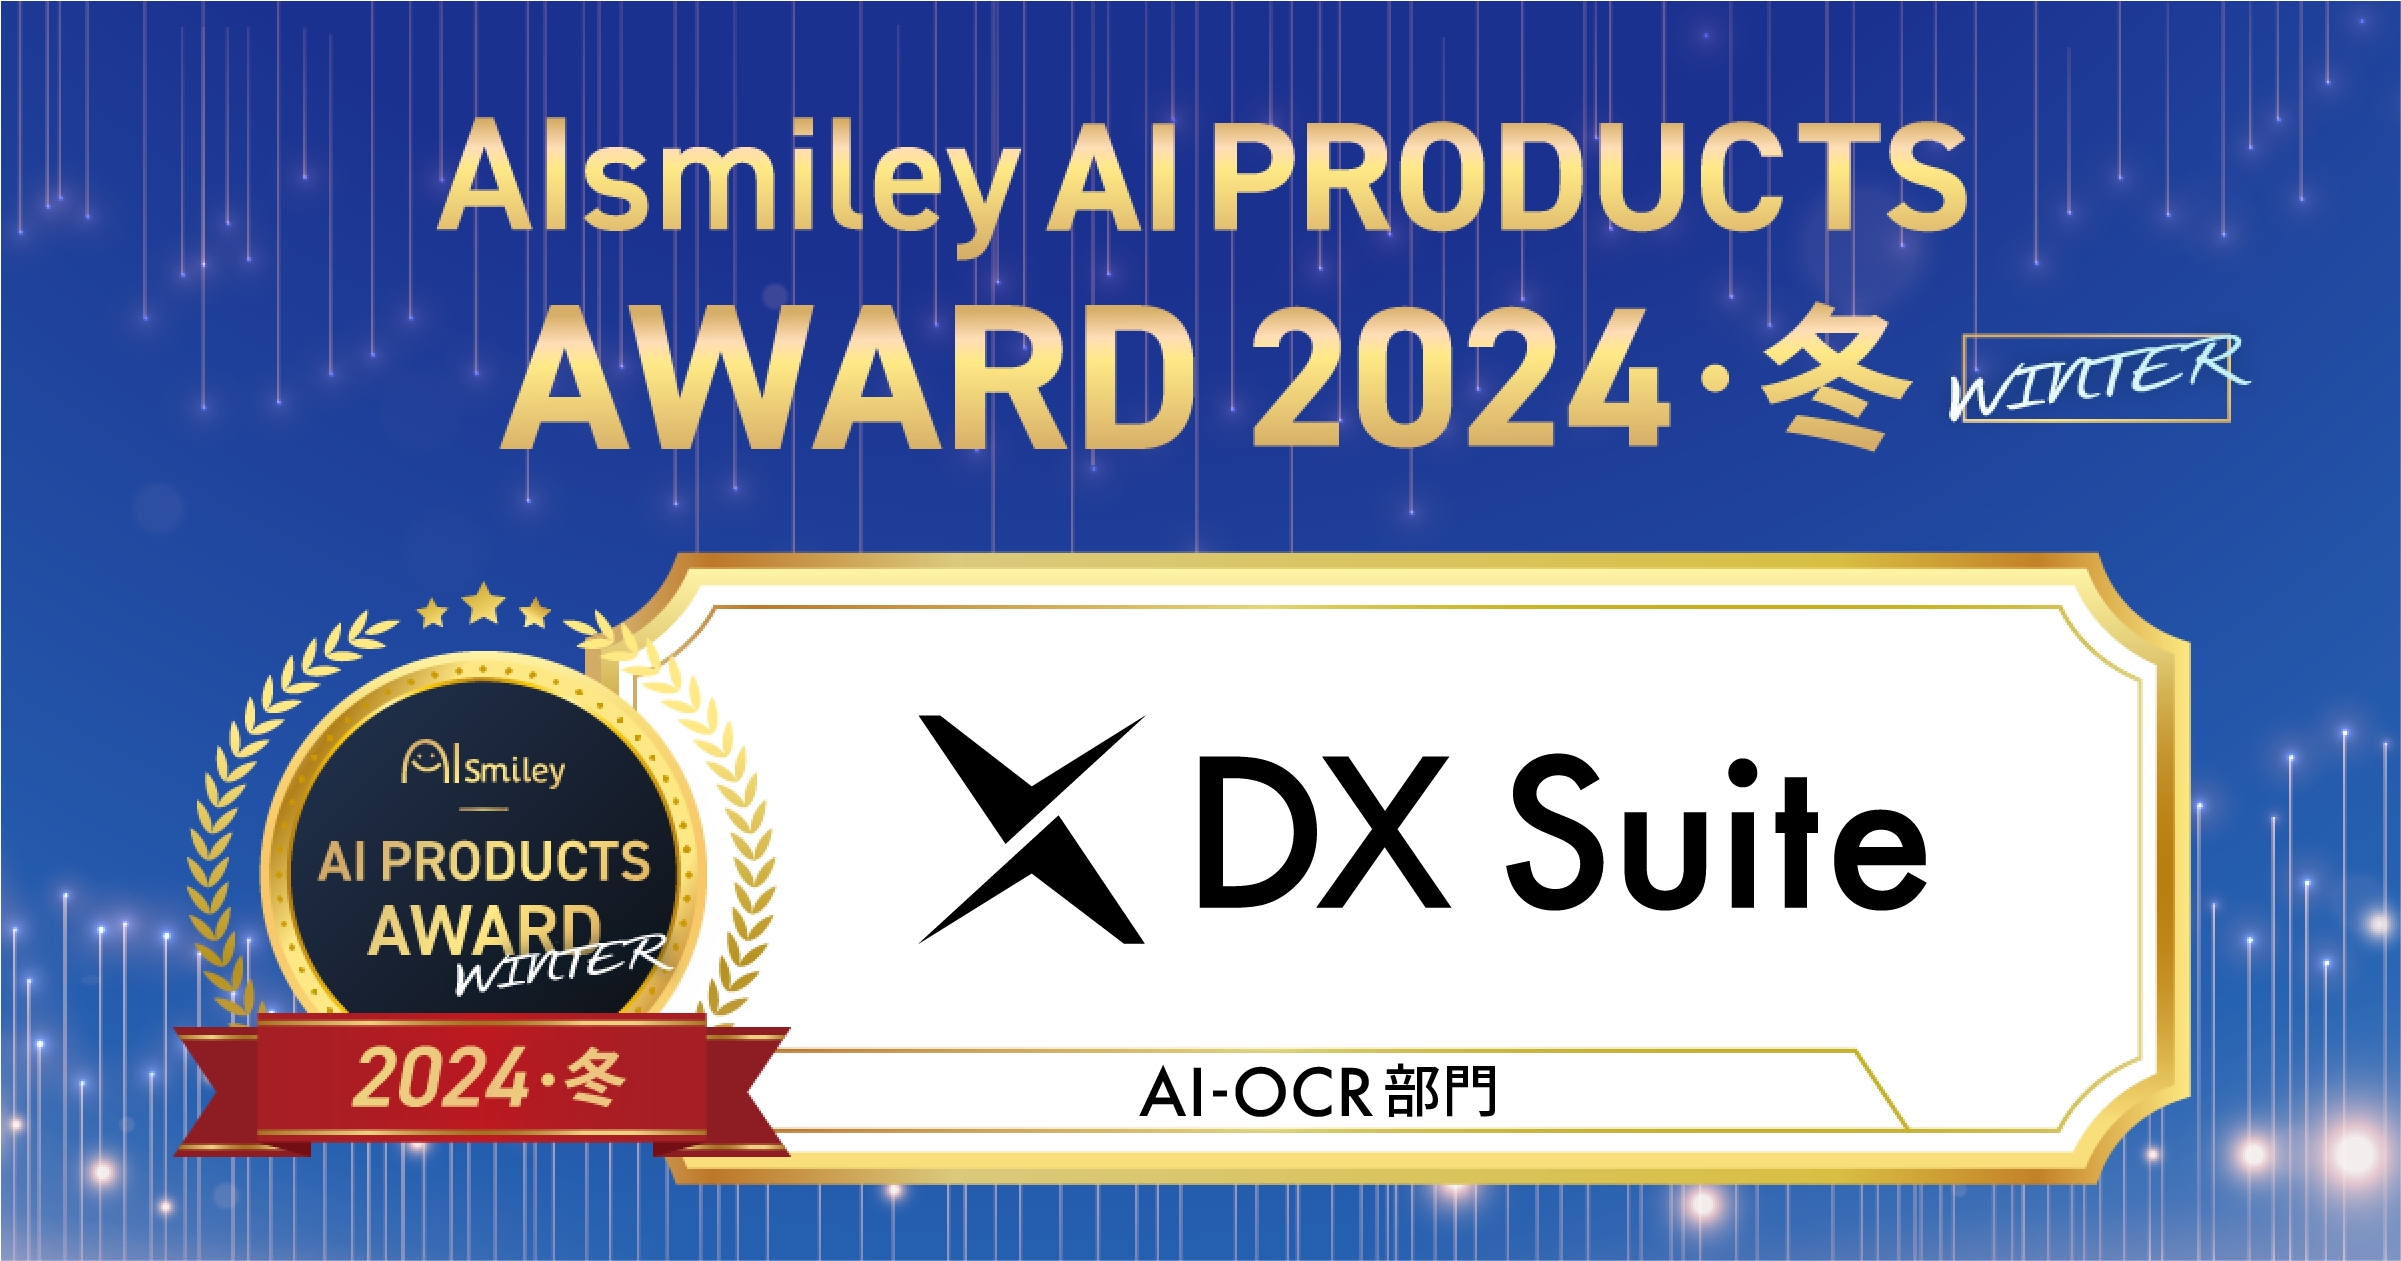 AIsmiley AI PRODUCTS AWARD 2024 Winter AI-OCR 部門にてグランプリを受賞